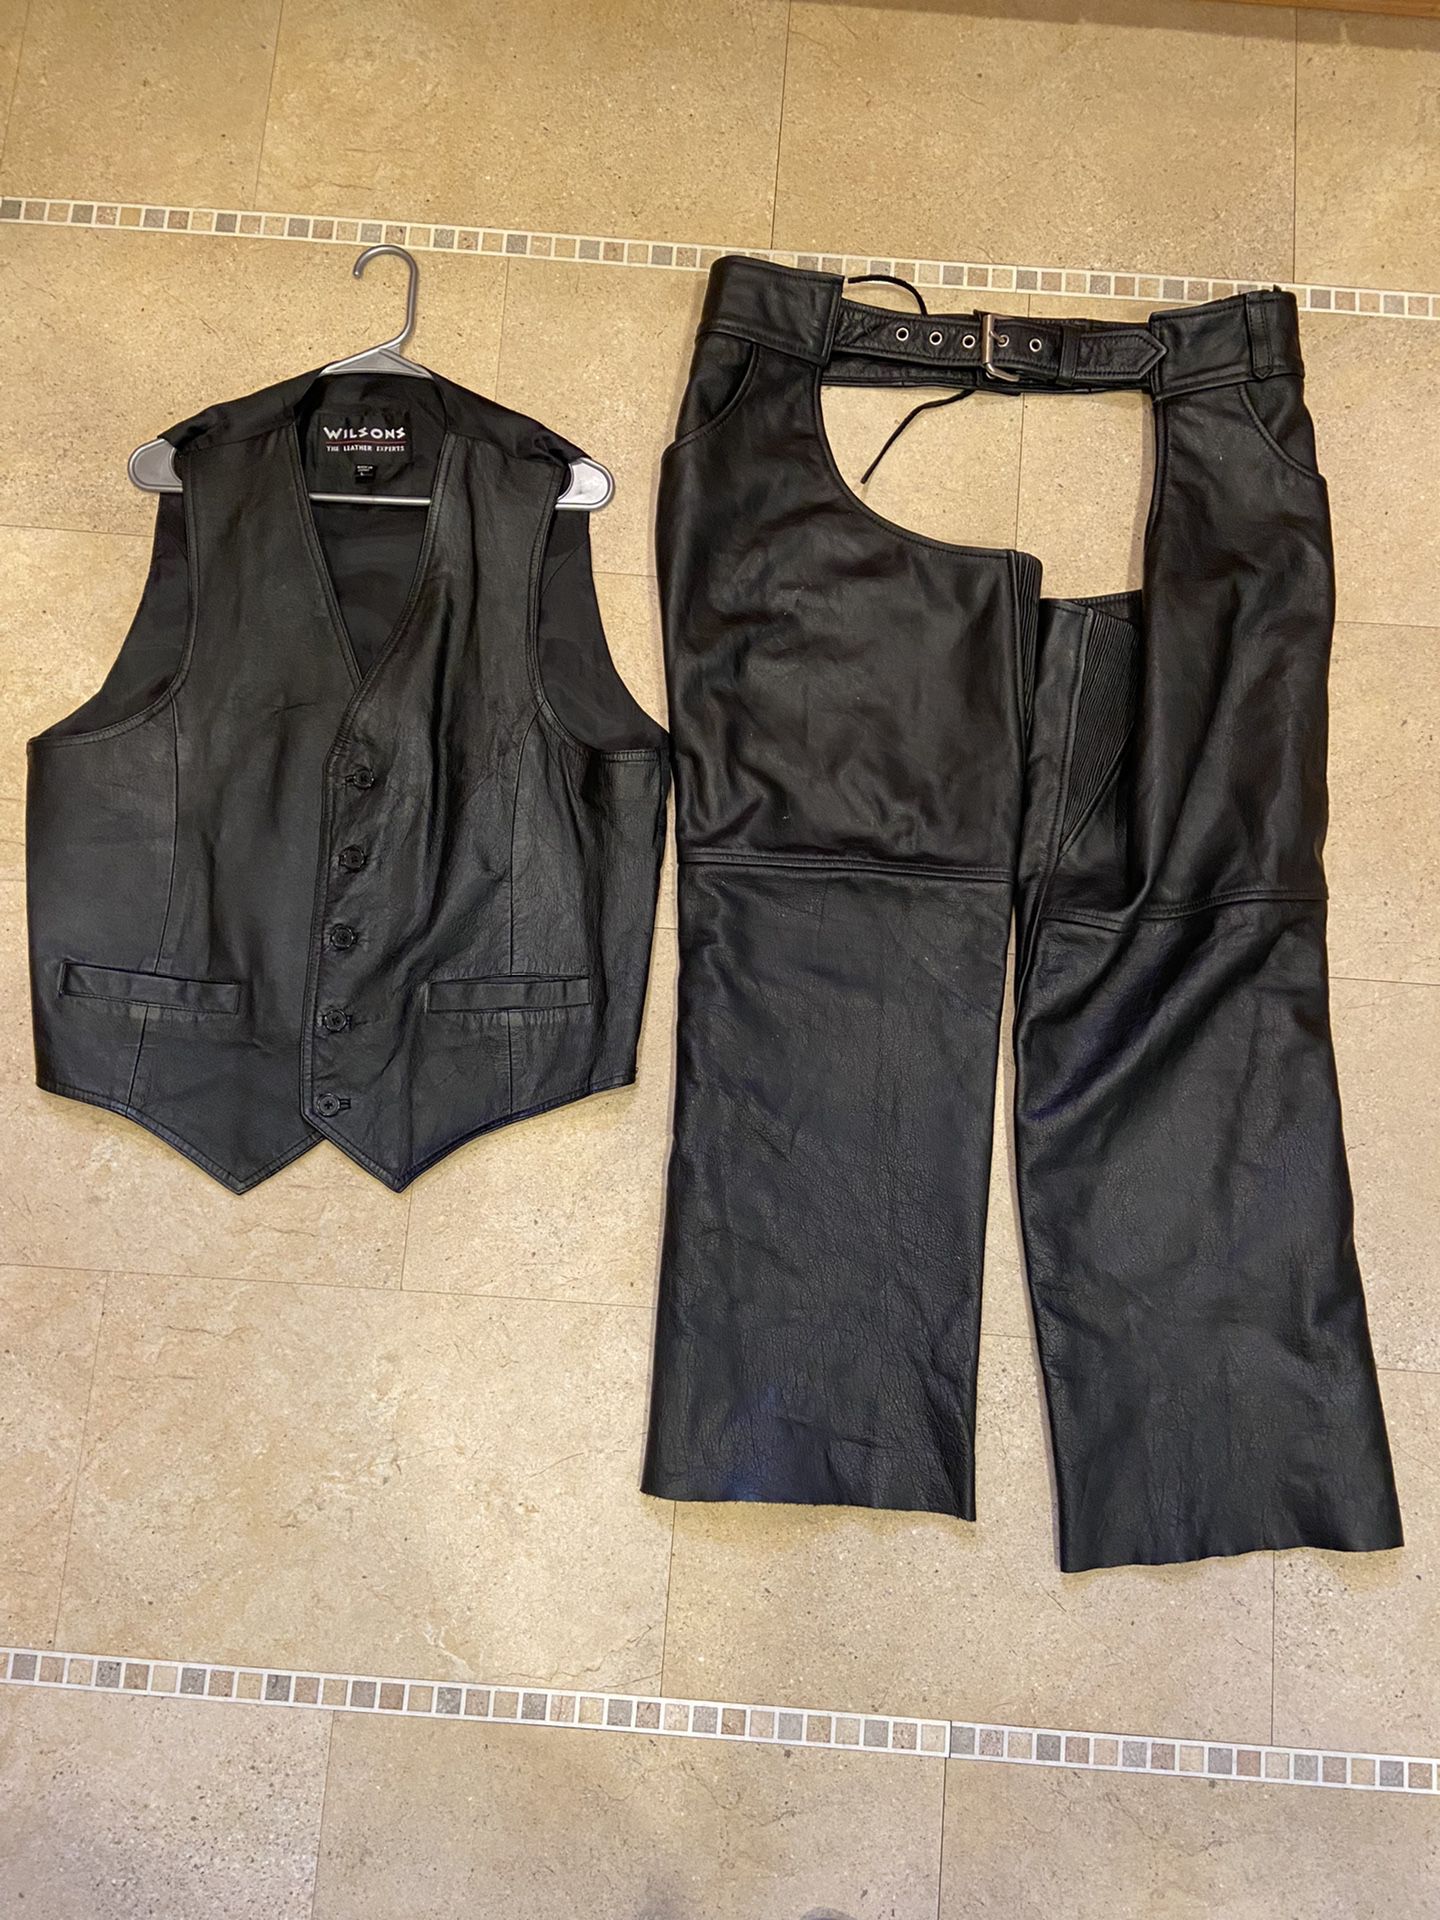 L Wilson leather vest $40,  2X Eagle leather Riding chaps $60